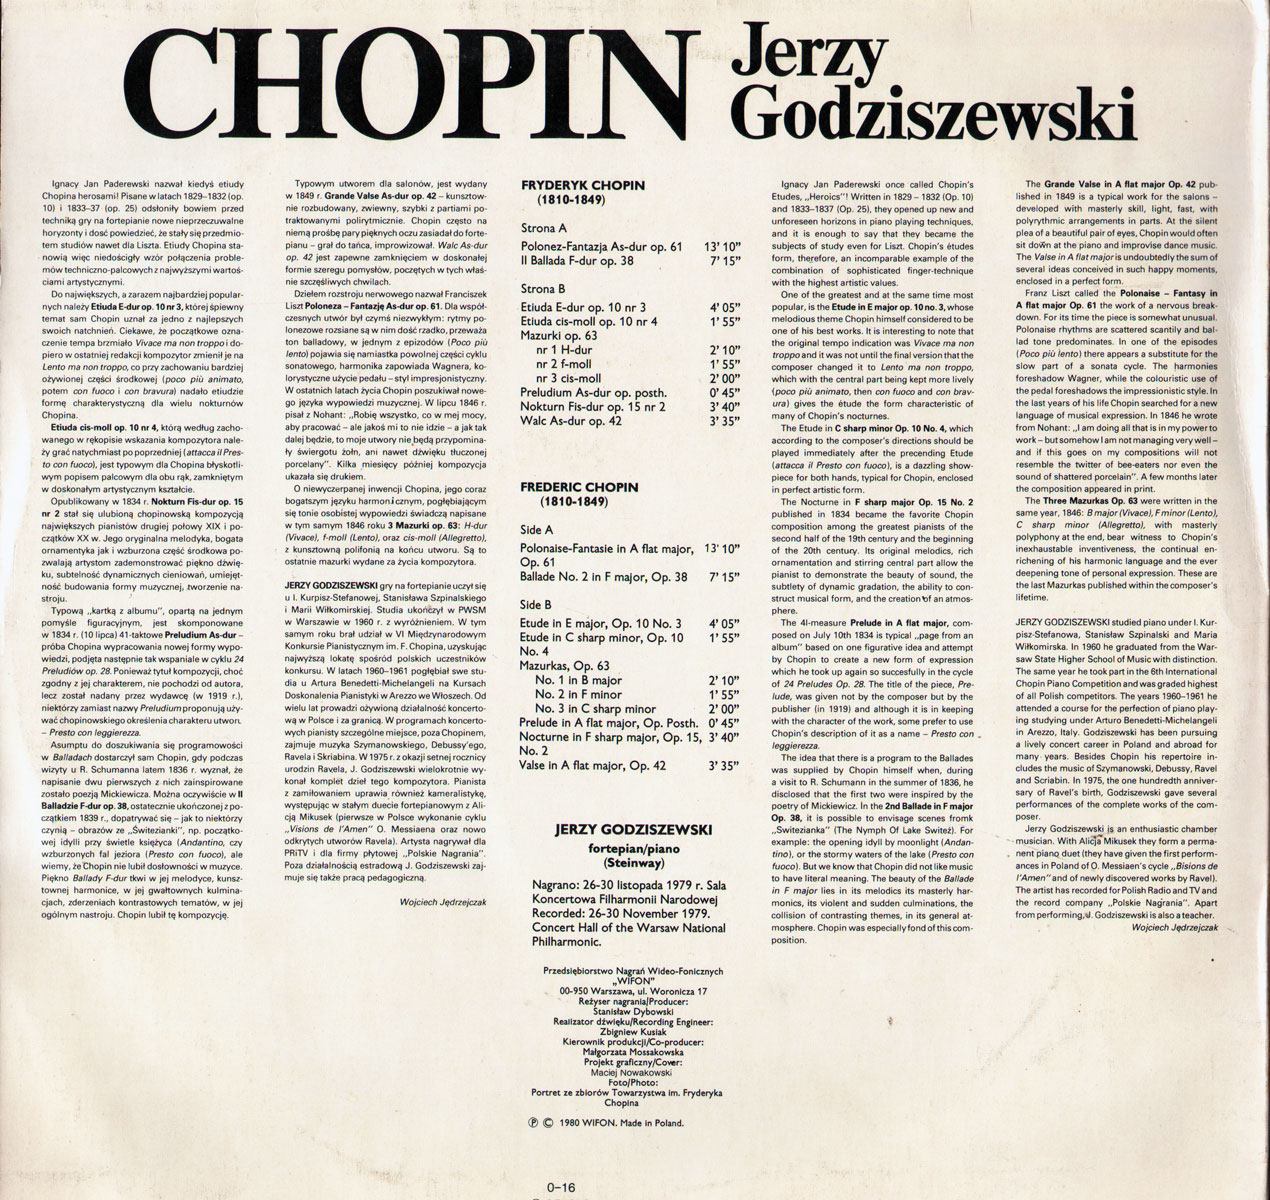 Jerzy Godziszewski. "Chopin" [по заказу польской фирмы WIFON, LP 016]